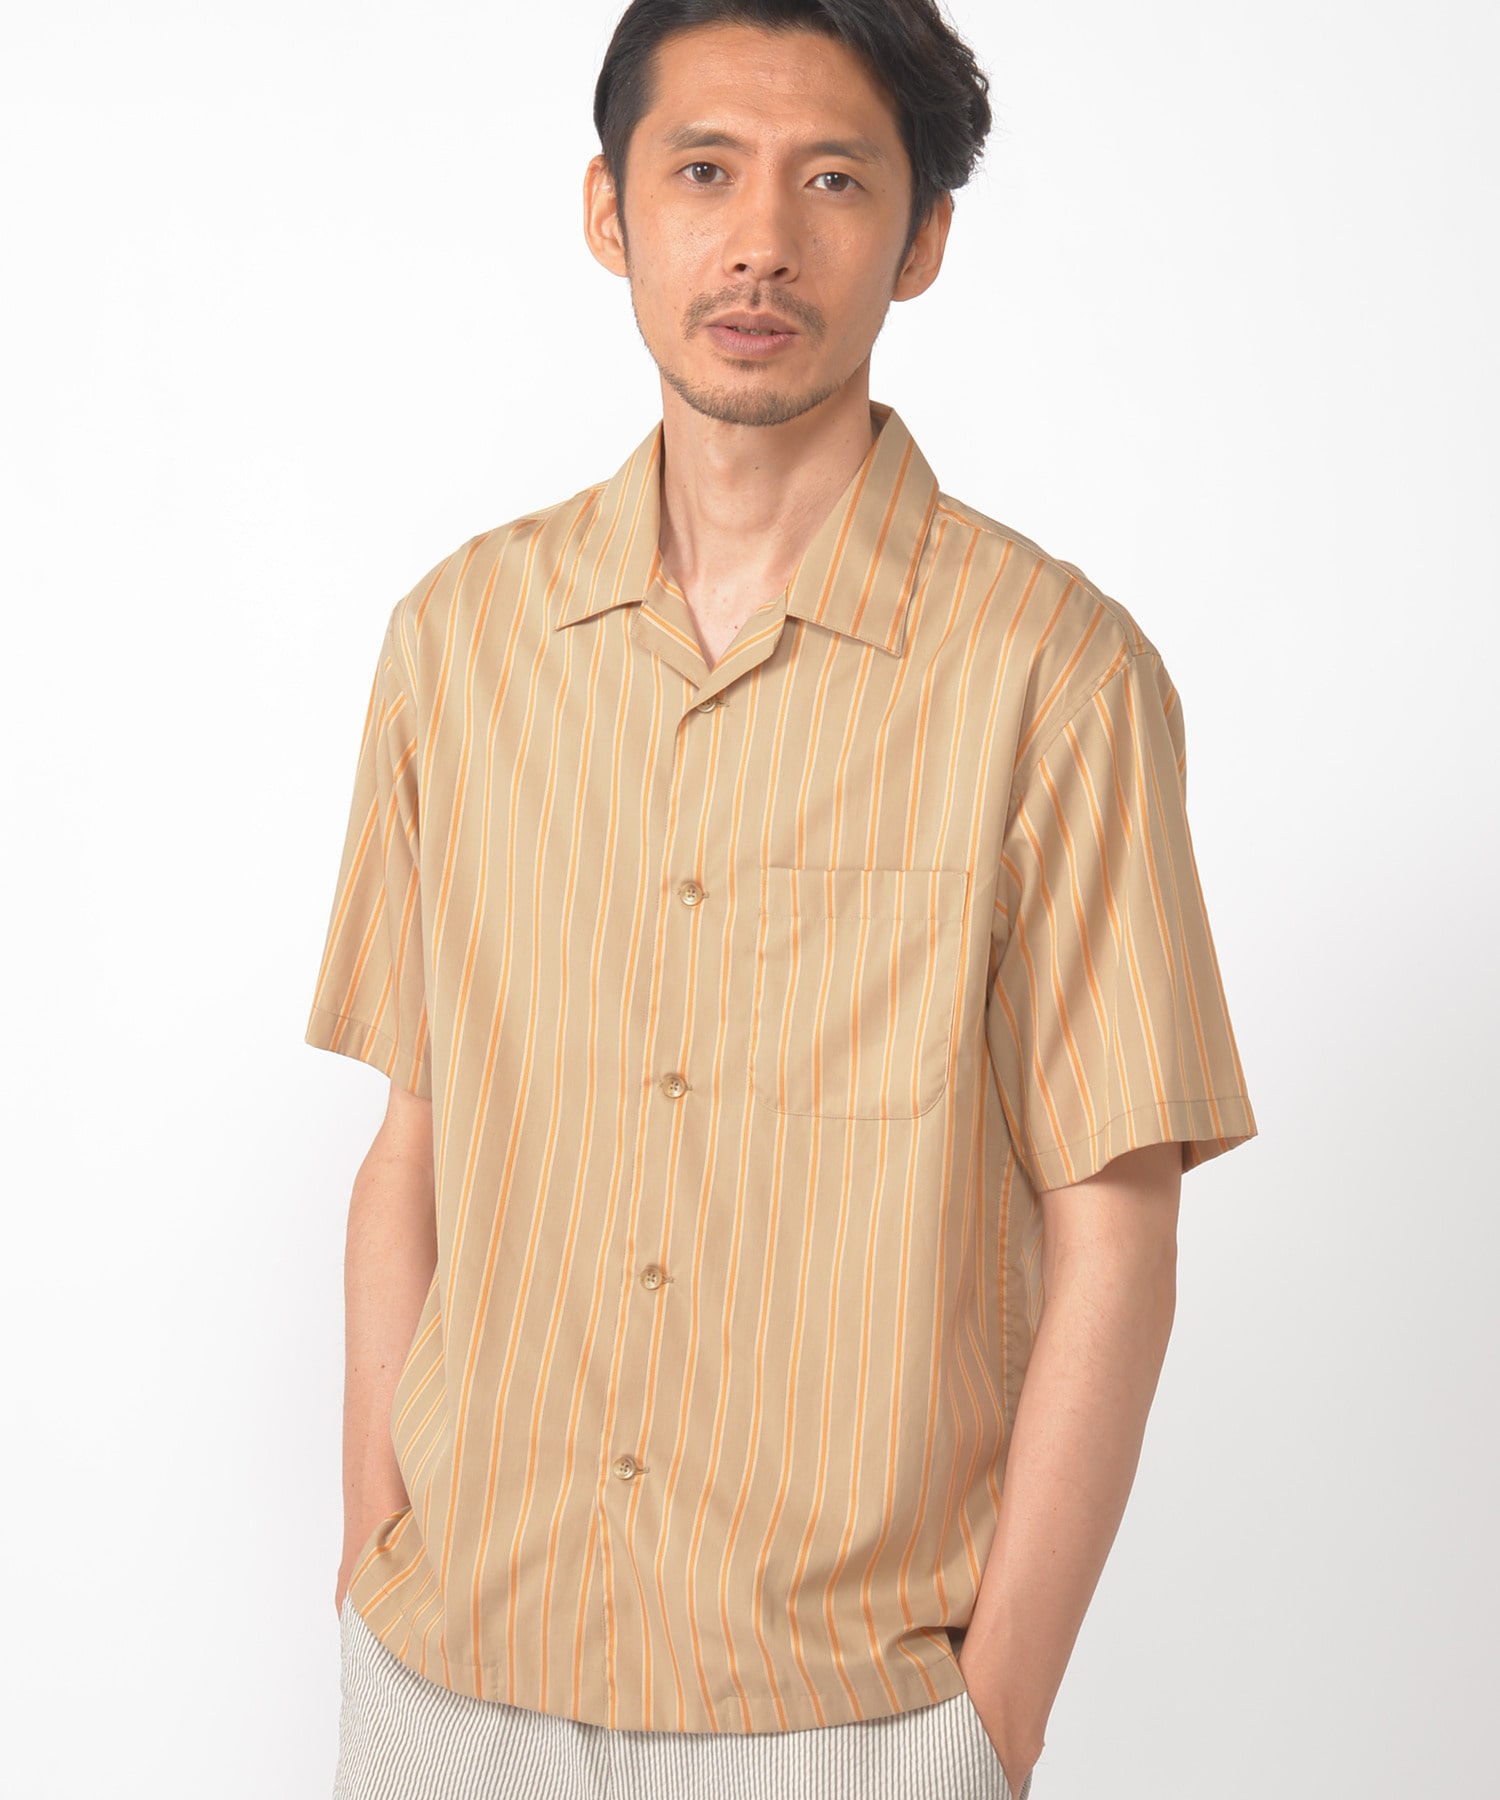 サテン織り コットンレーヨンストライプ半袖シャツ メンズファッション通販 Men S Bigi Online Store メンズビギ オンラインストア